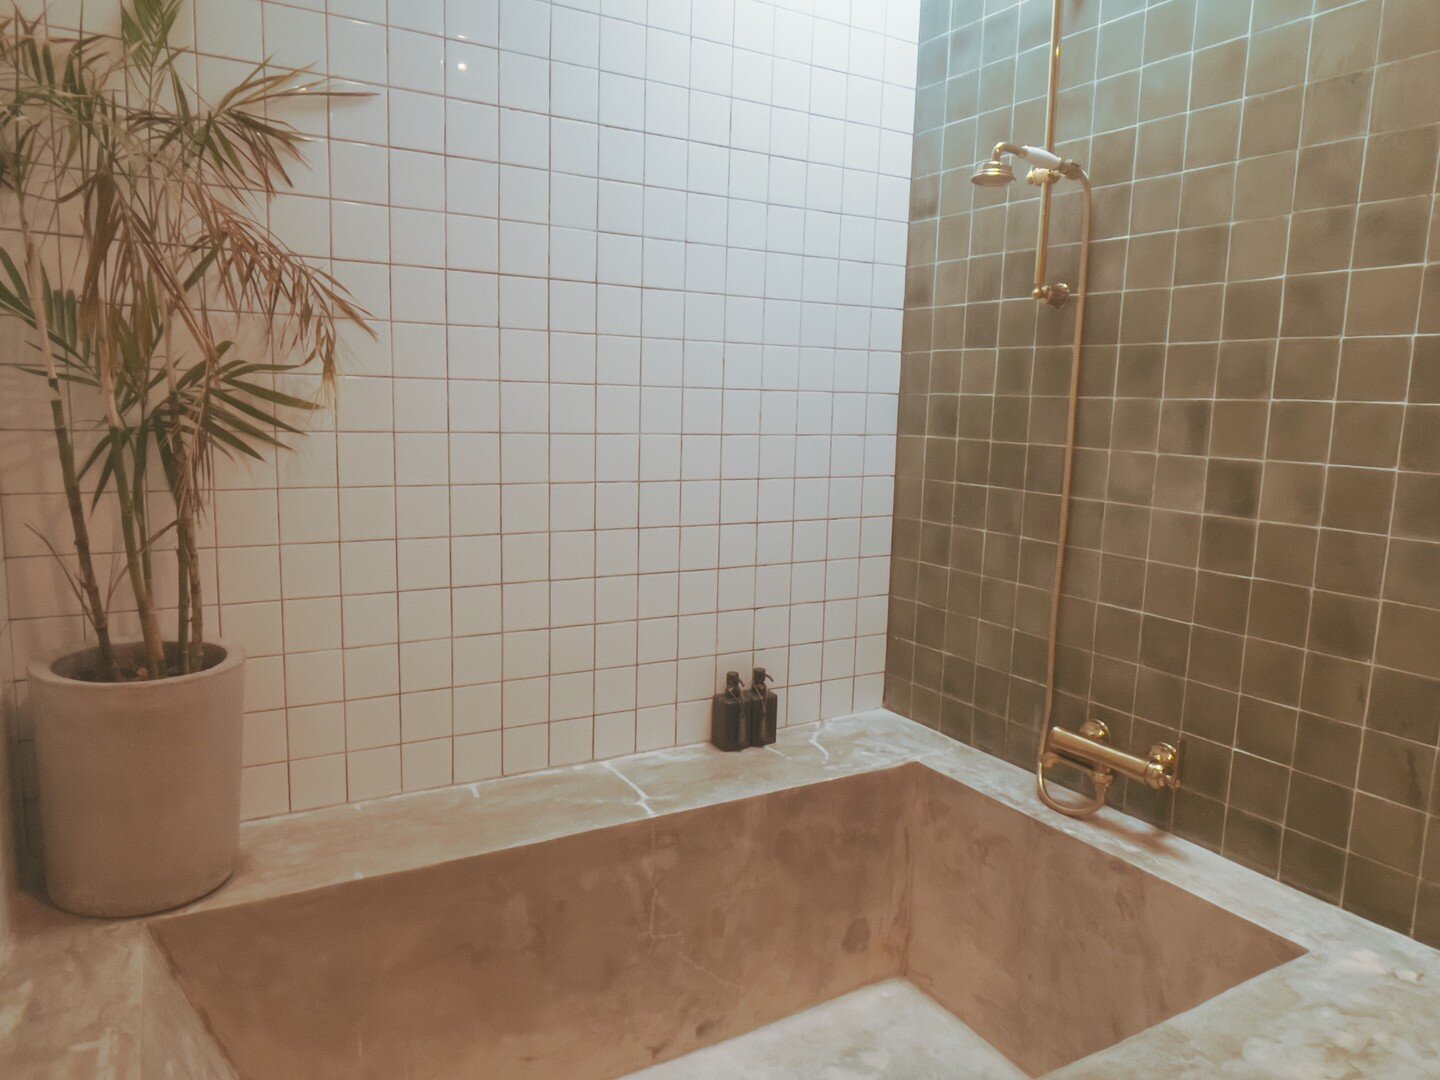 The bathtub 

*
*
*
 #norushvillas #bathroom #vogueliving